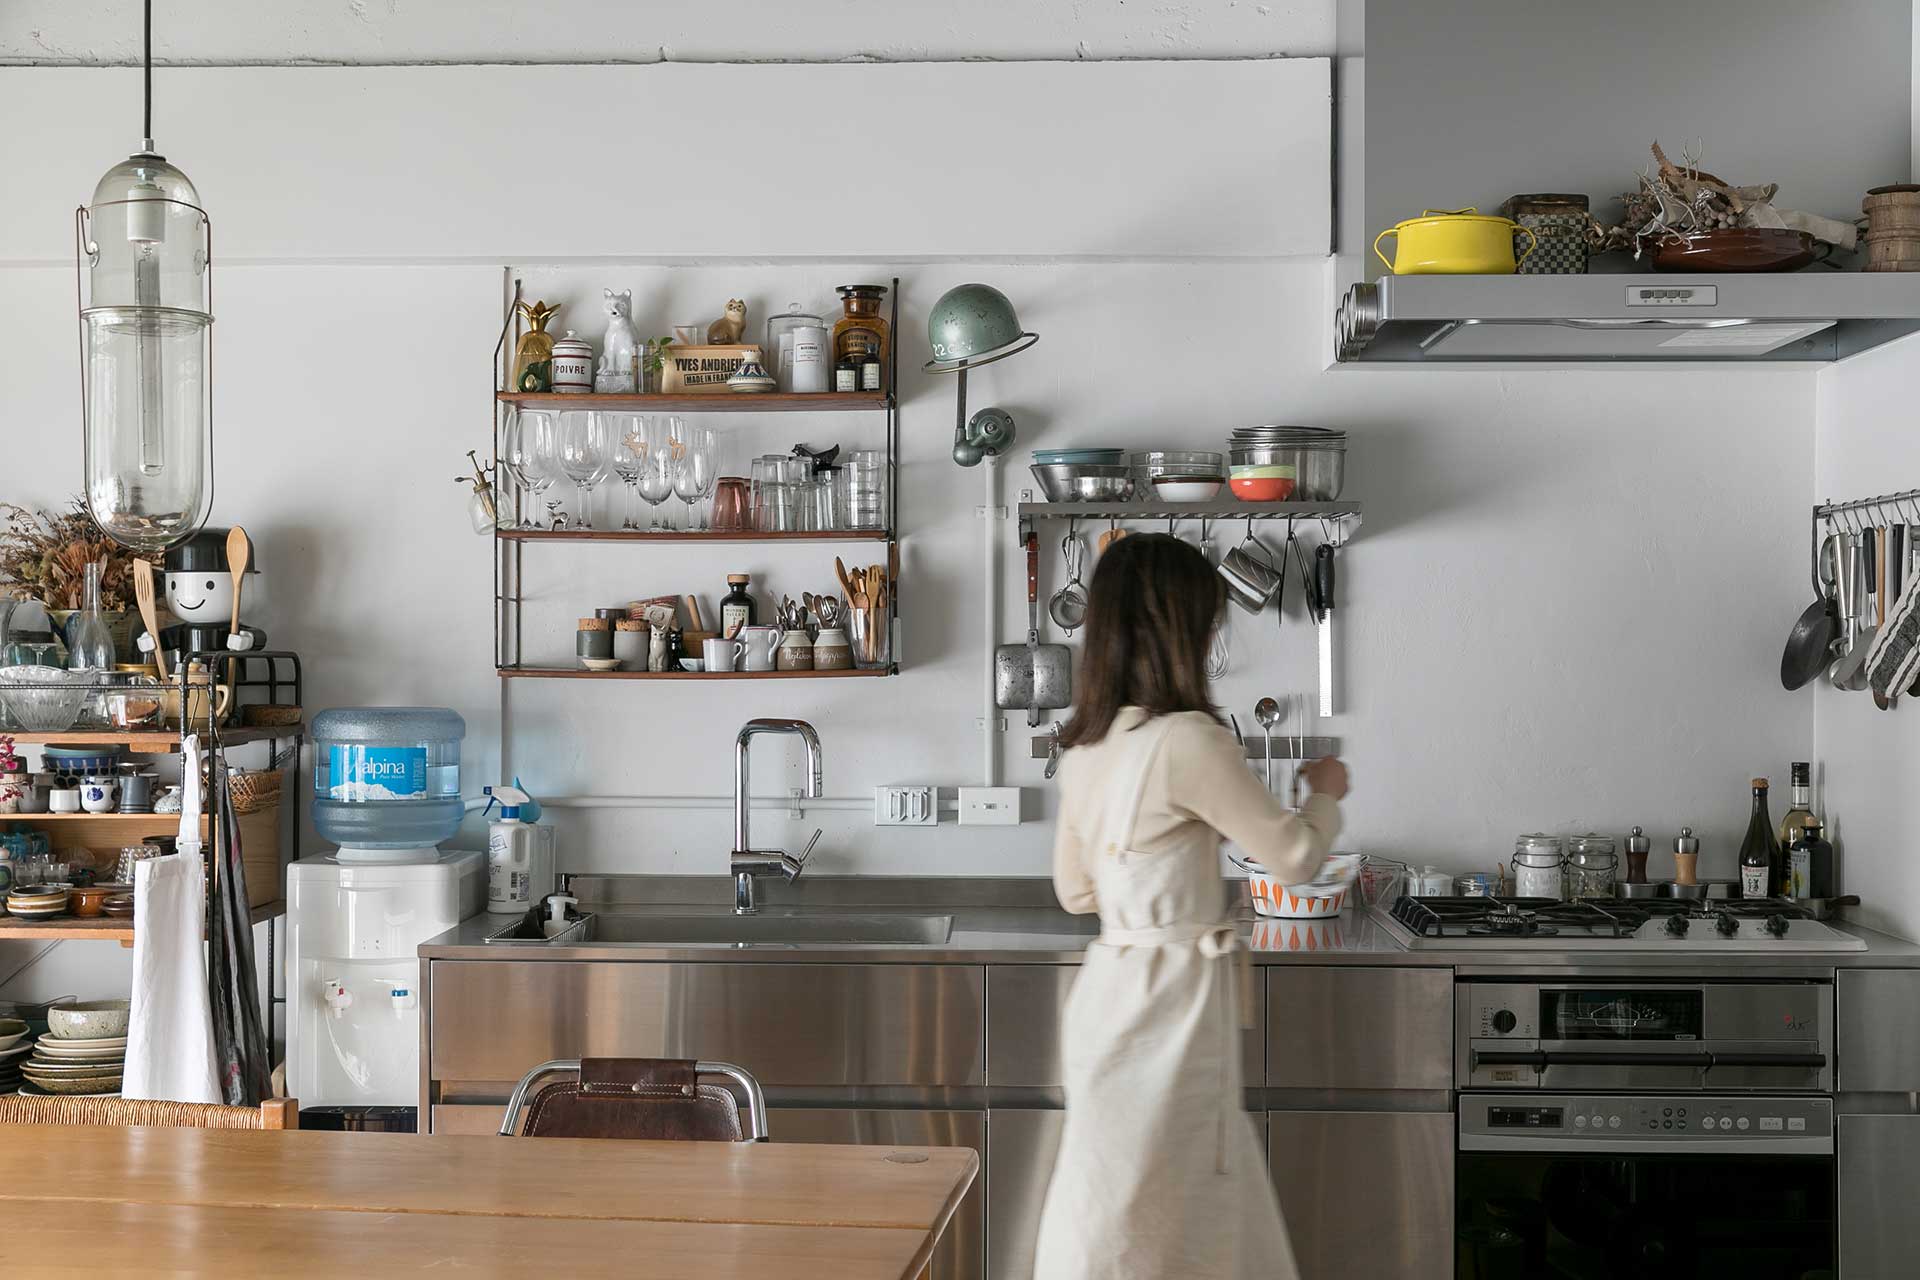 ヘアライン加工されたLA-ARCHITECTSのステンレスのキッチンにはオーブンをビルトイン。「いつも業務用の食洗機を使っていて、家庭用は遅く感じてしまうので食洗機は入れませんでした」